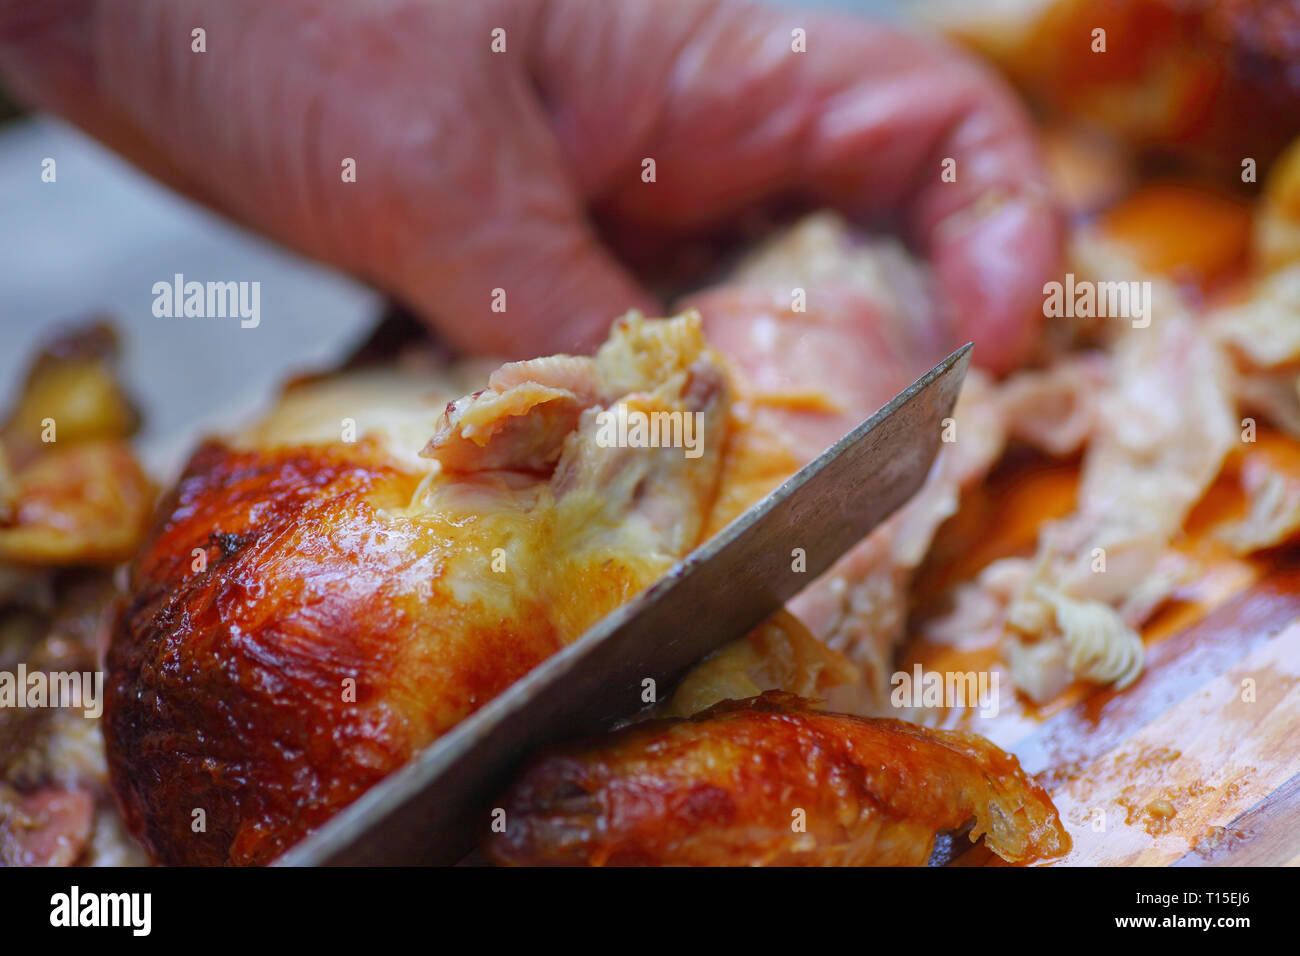 L'homme saisit le poulet, à l'aide d'un couteau de cuisine pour couper des morceaux Banque D'Images